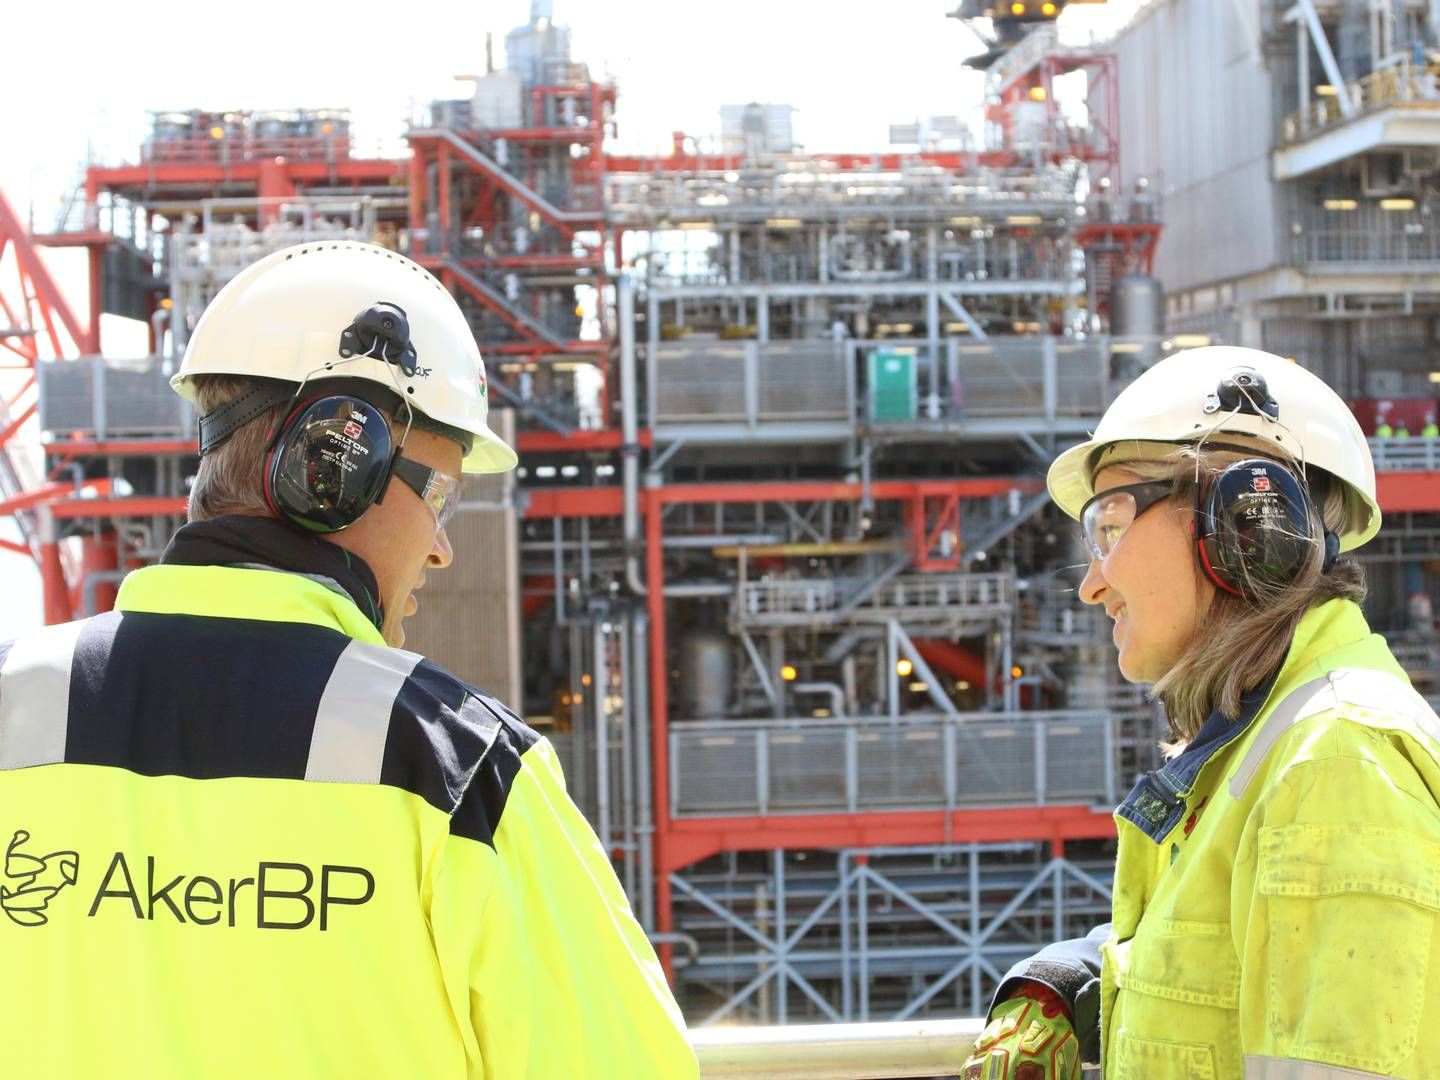 PÅVIRKES OG FØLGER MED: Aker BP følger med på klimatoppmøtet og oppgir at selskapet ønsker å levere så rent og kostnadseffektivt som mulig. | Foto: Aker BP